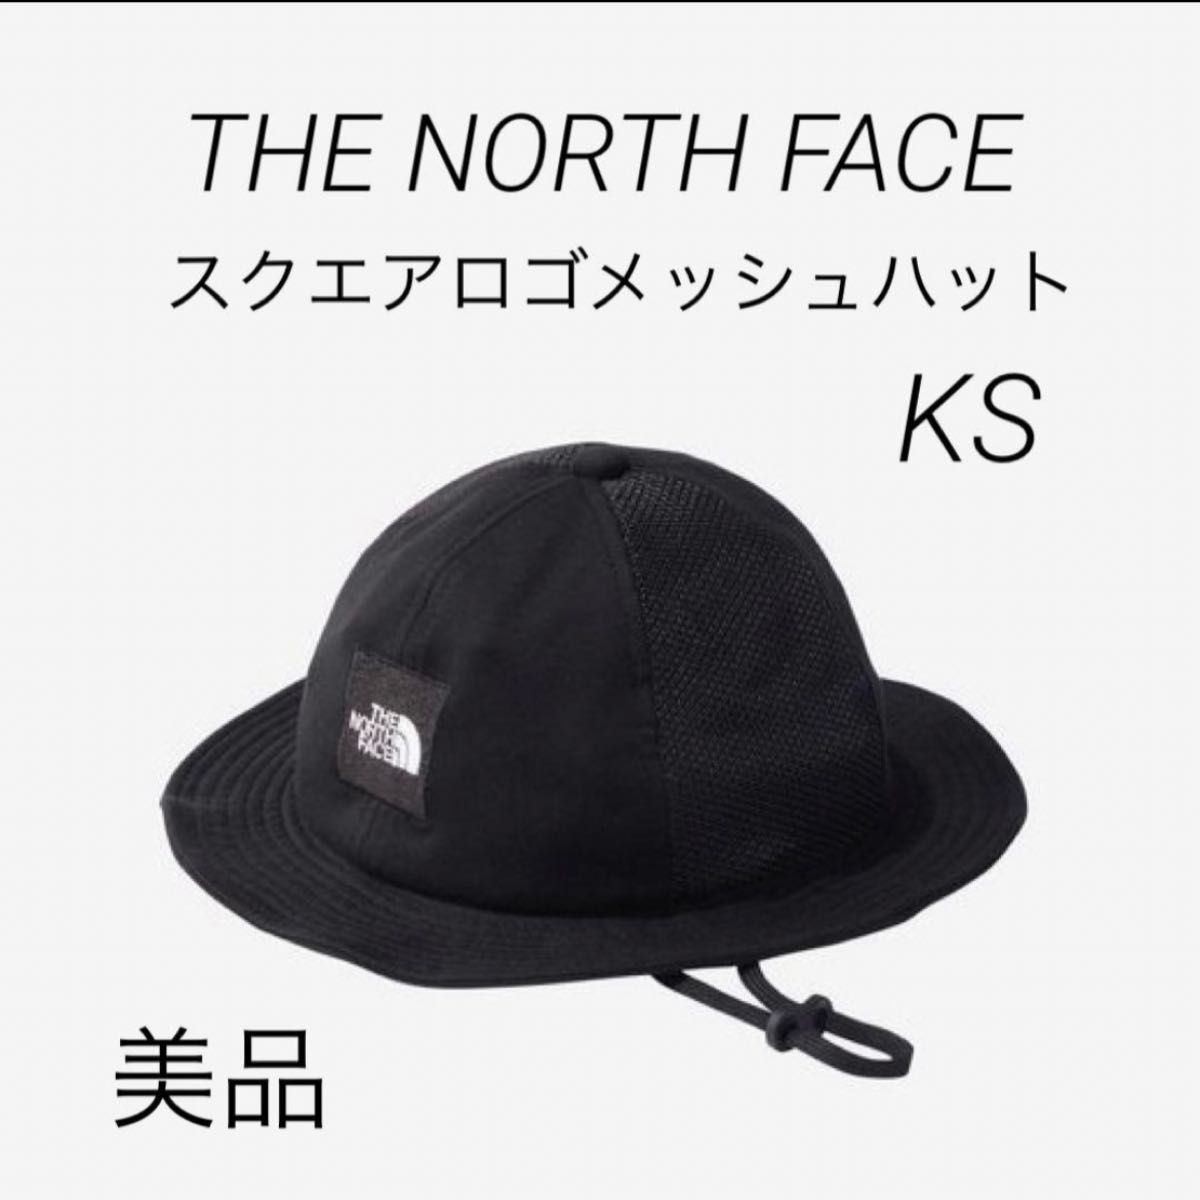 THE NORTH FACE ノースフェイス スクエアロゴメッシュハット ブラック ハット 帽子 コットン チャレンジャー